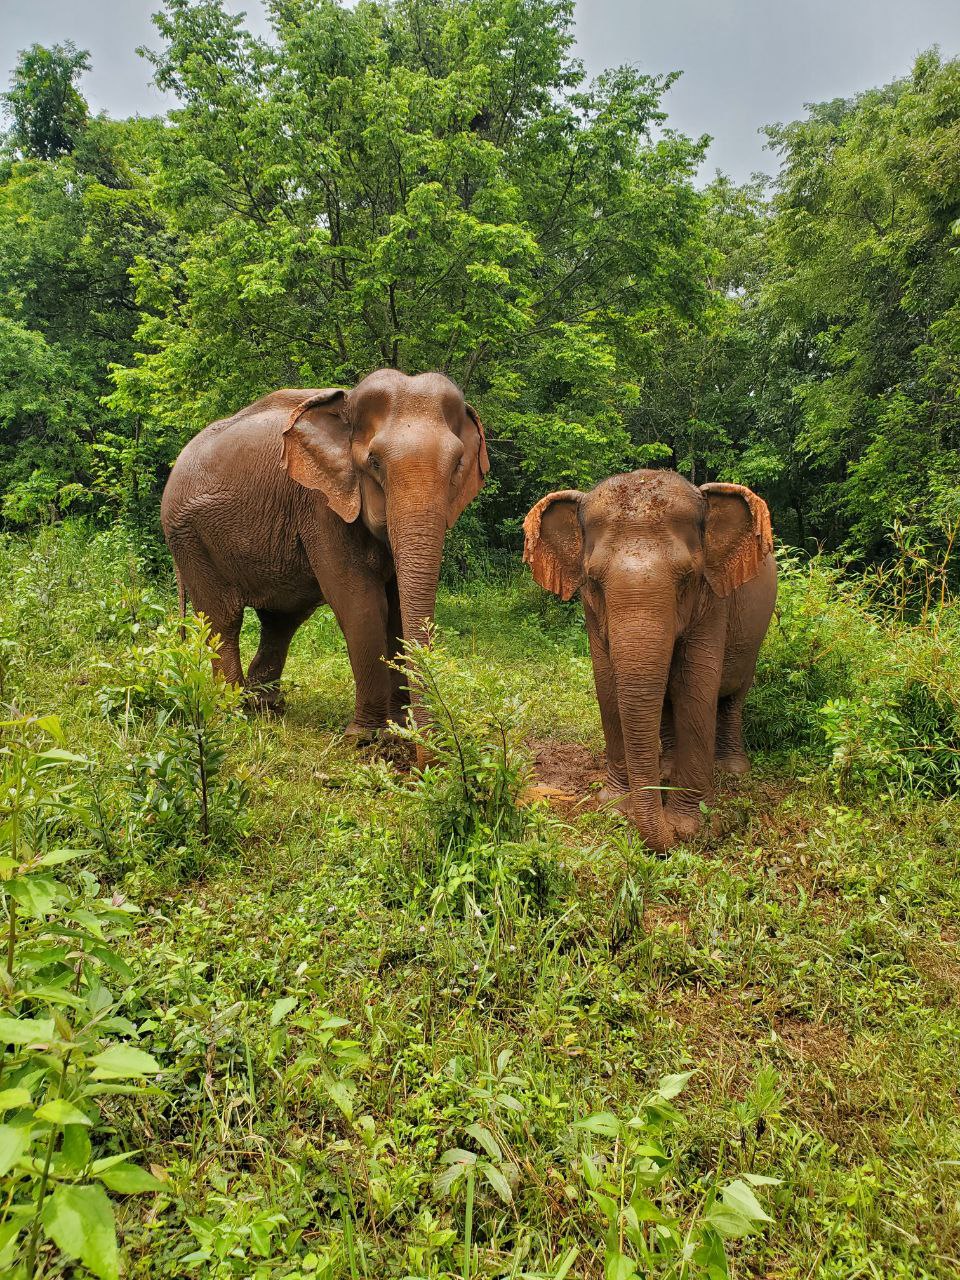 Elephant Valley Project (EVP) en Mondulkiri, Camboya, es un santuario de elefantes de 4000 acres y un programa de ecoturismo que cuida a 10 elefantes y a toda una comunidad, incluida la educación y la atención médica.